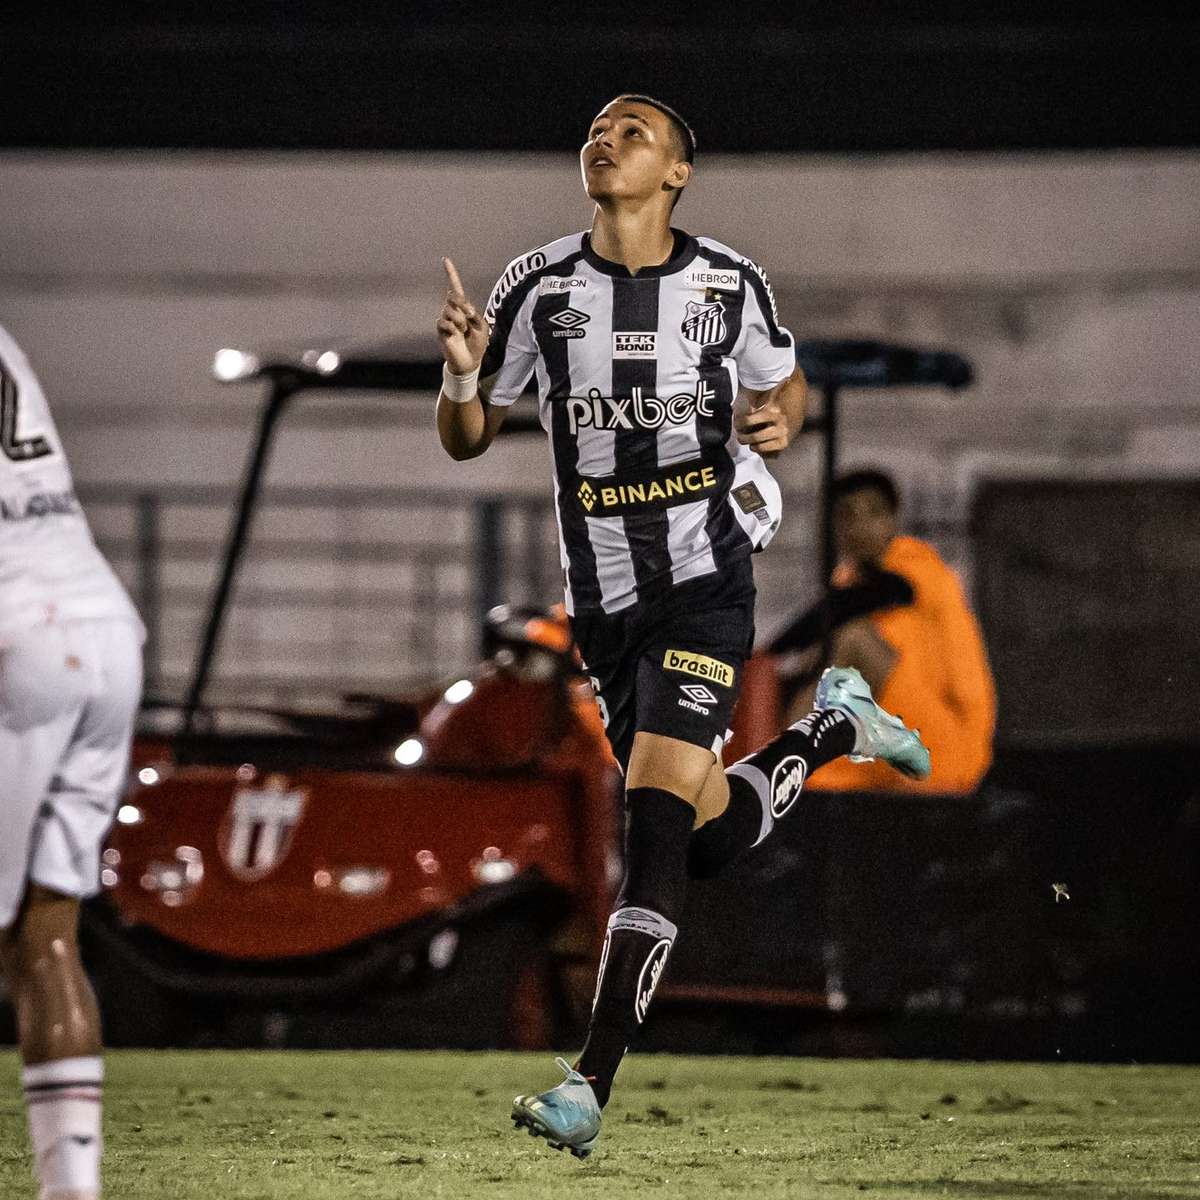 Reforço do Santos, Angulo vem de temporada ruim - Gazeta Esportiva